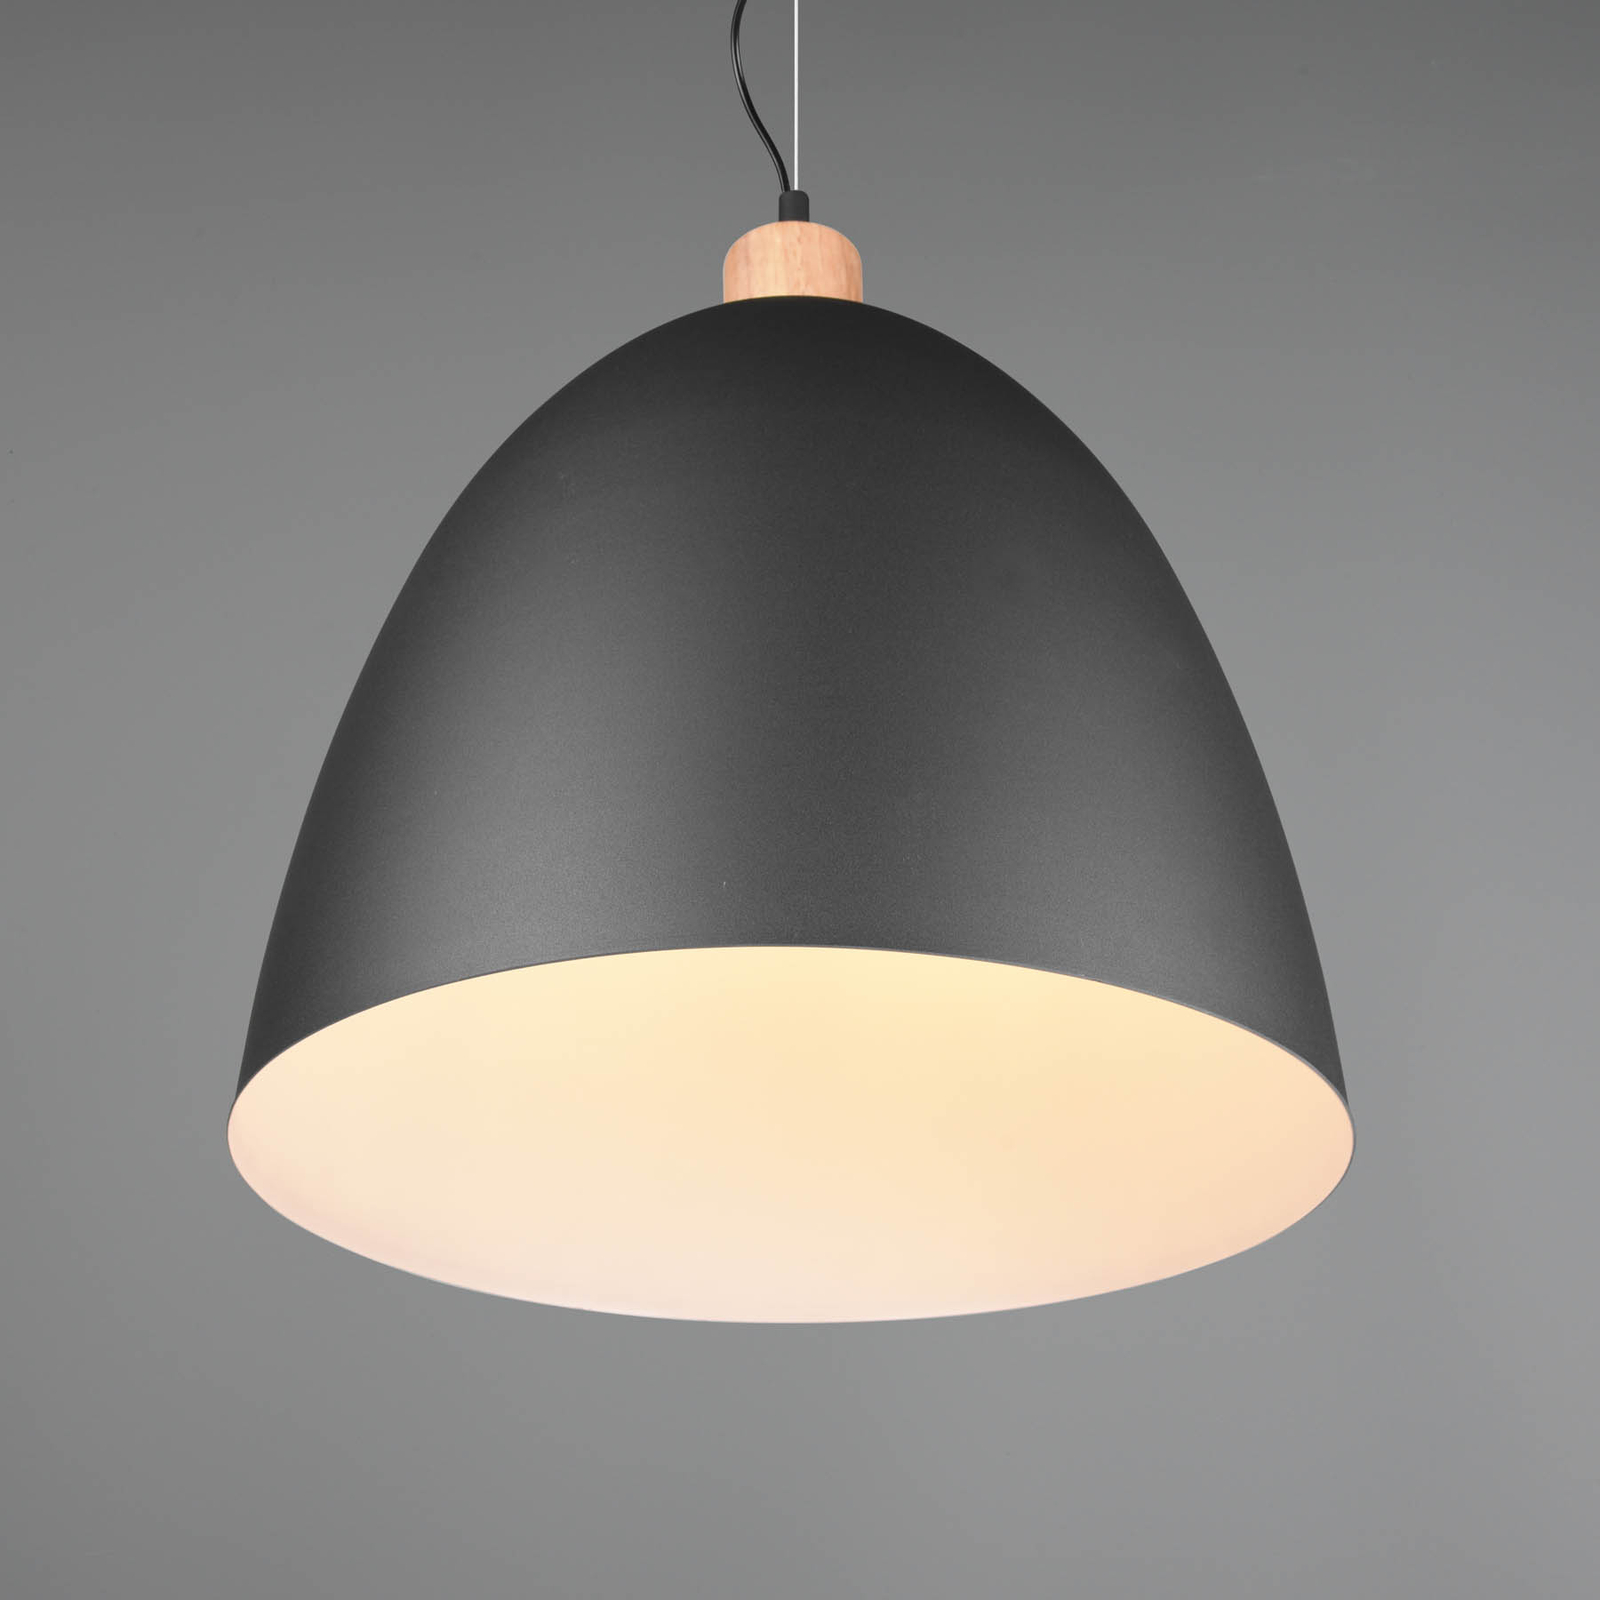 Hanglamp Jagger, 1-lamp, Ø 40 cm, zwart